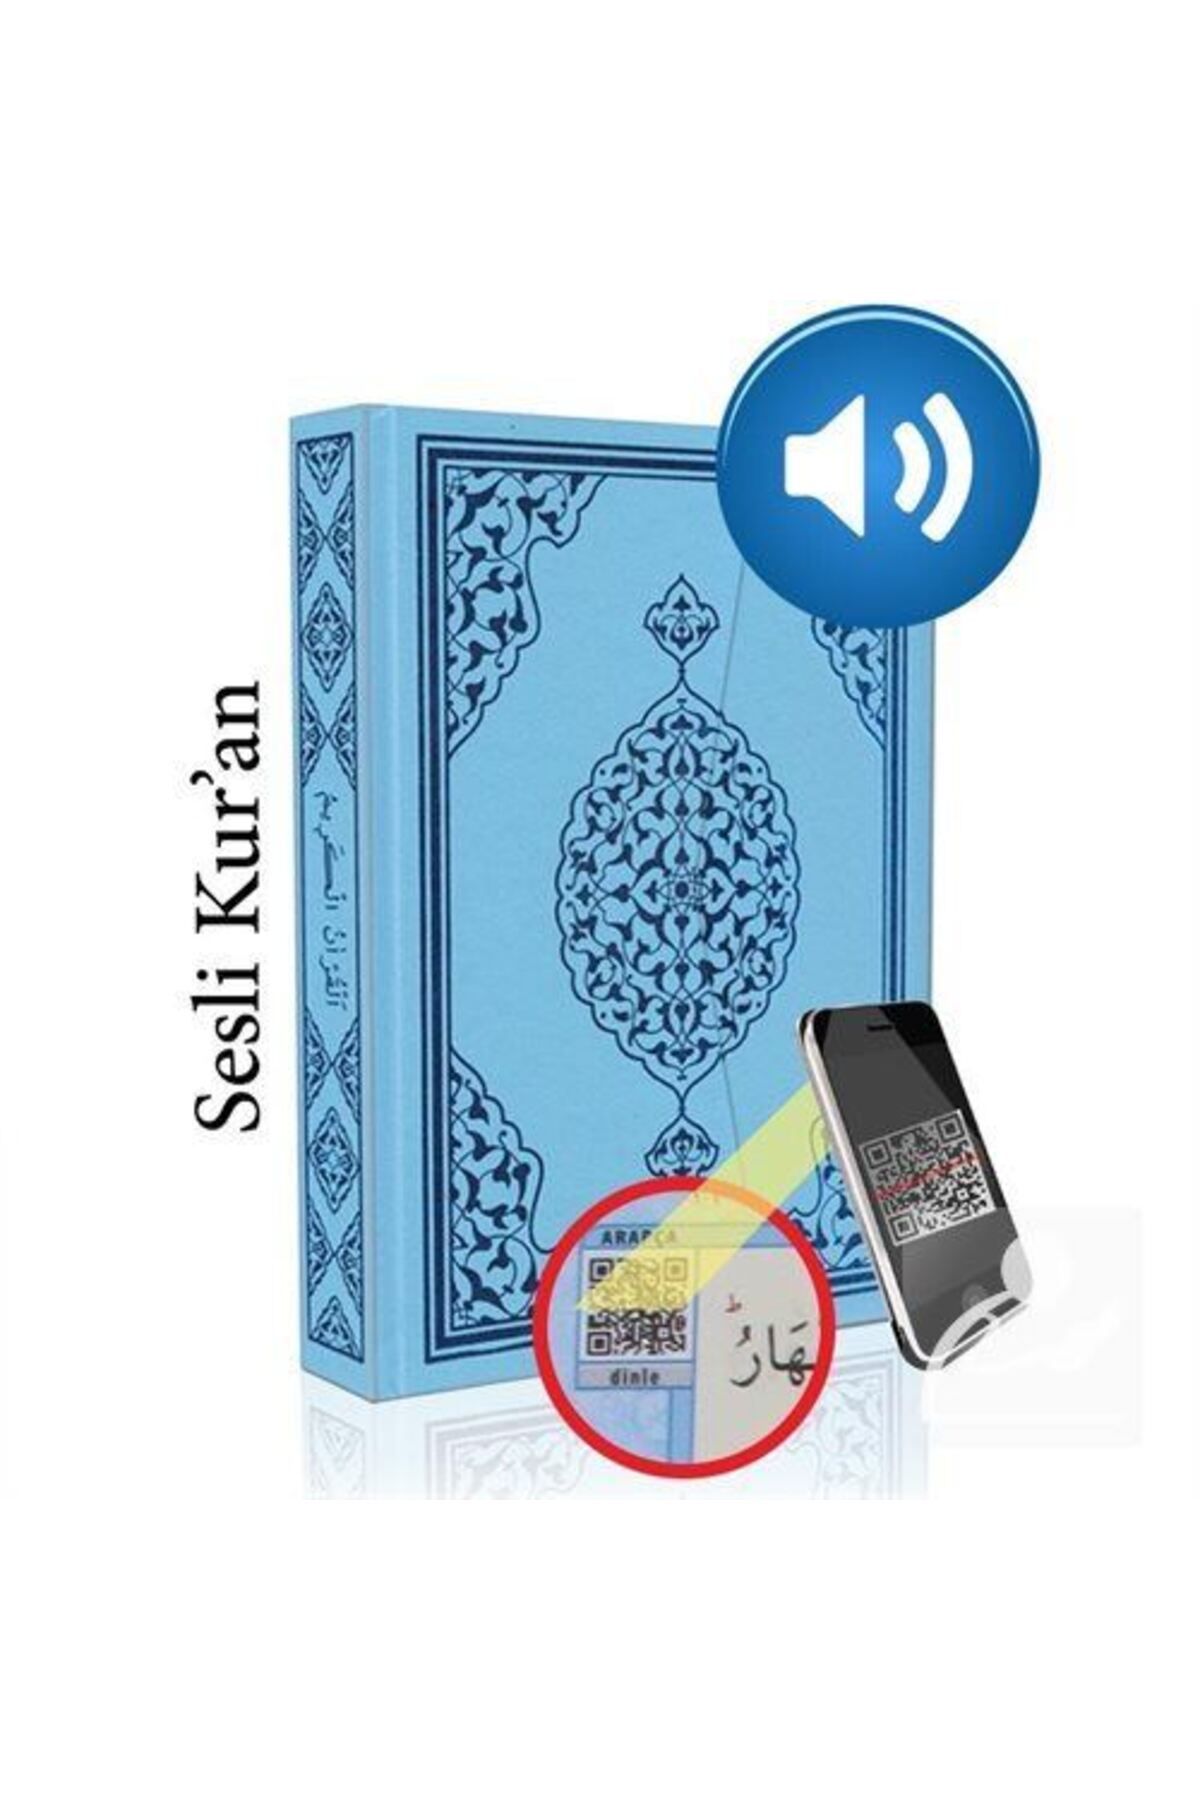 Merve Yayınları Kur'an-ı Kerim Bilgisayar Hatlı Mavi Renk Orta Boy (KUR-AN 015) Sesli Kur-an